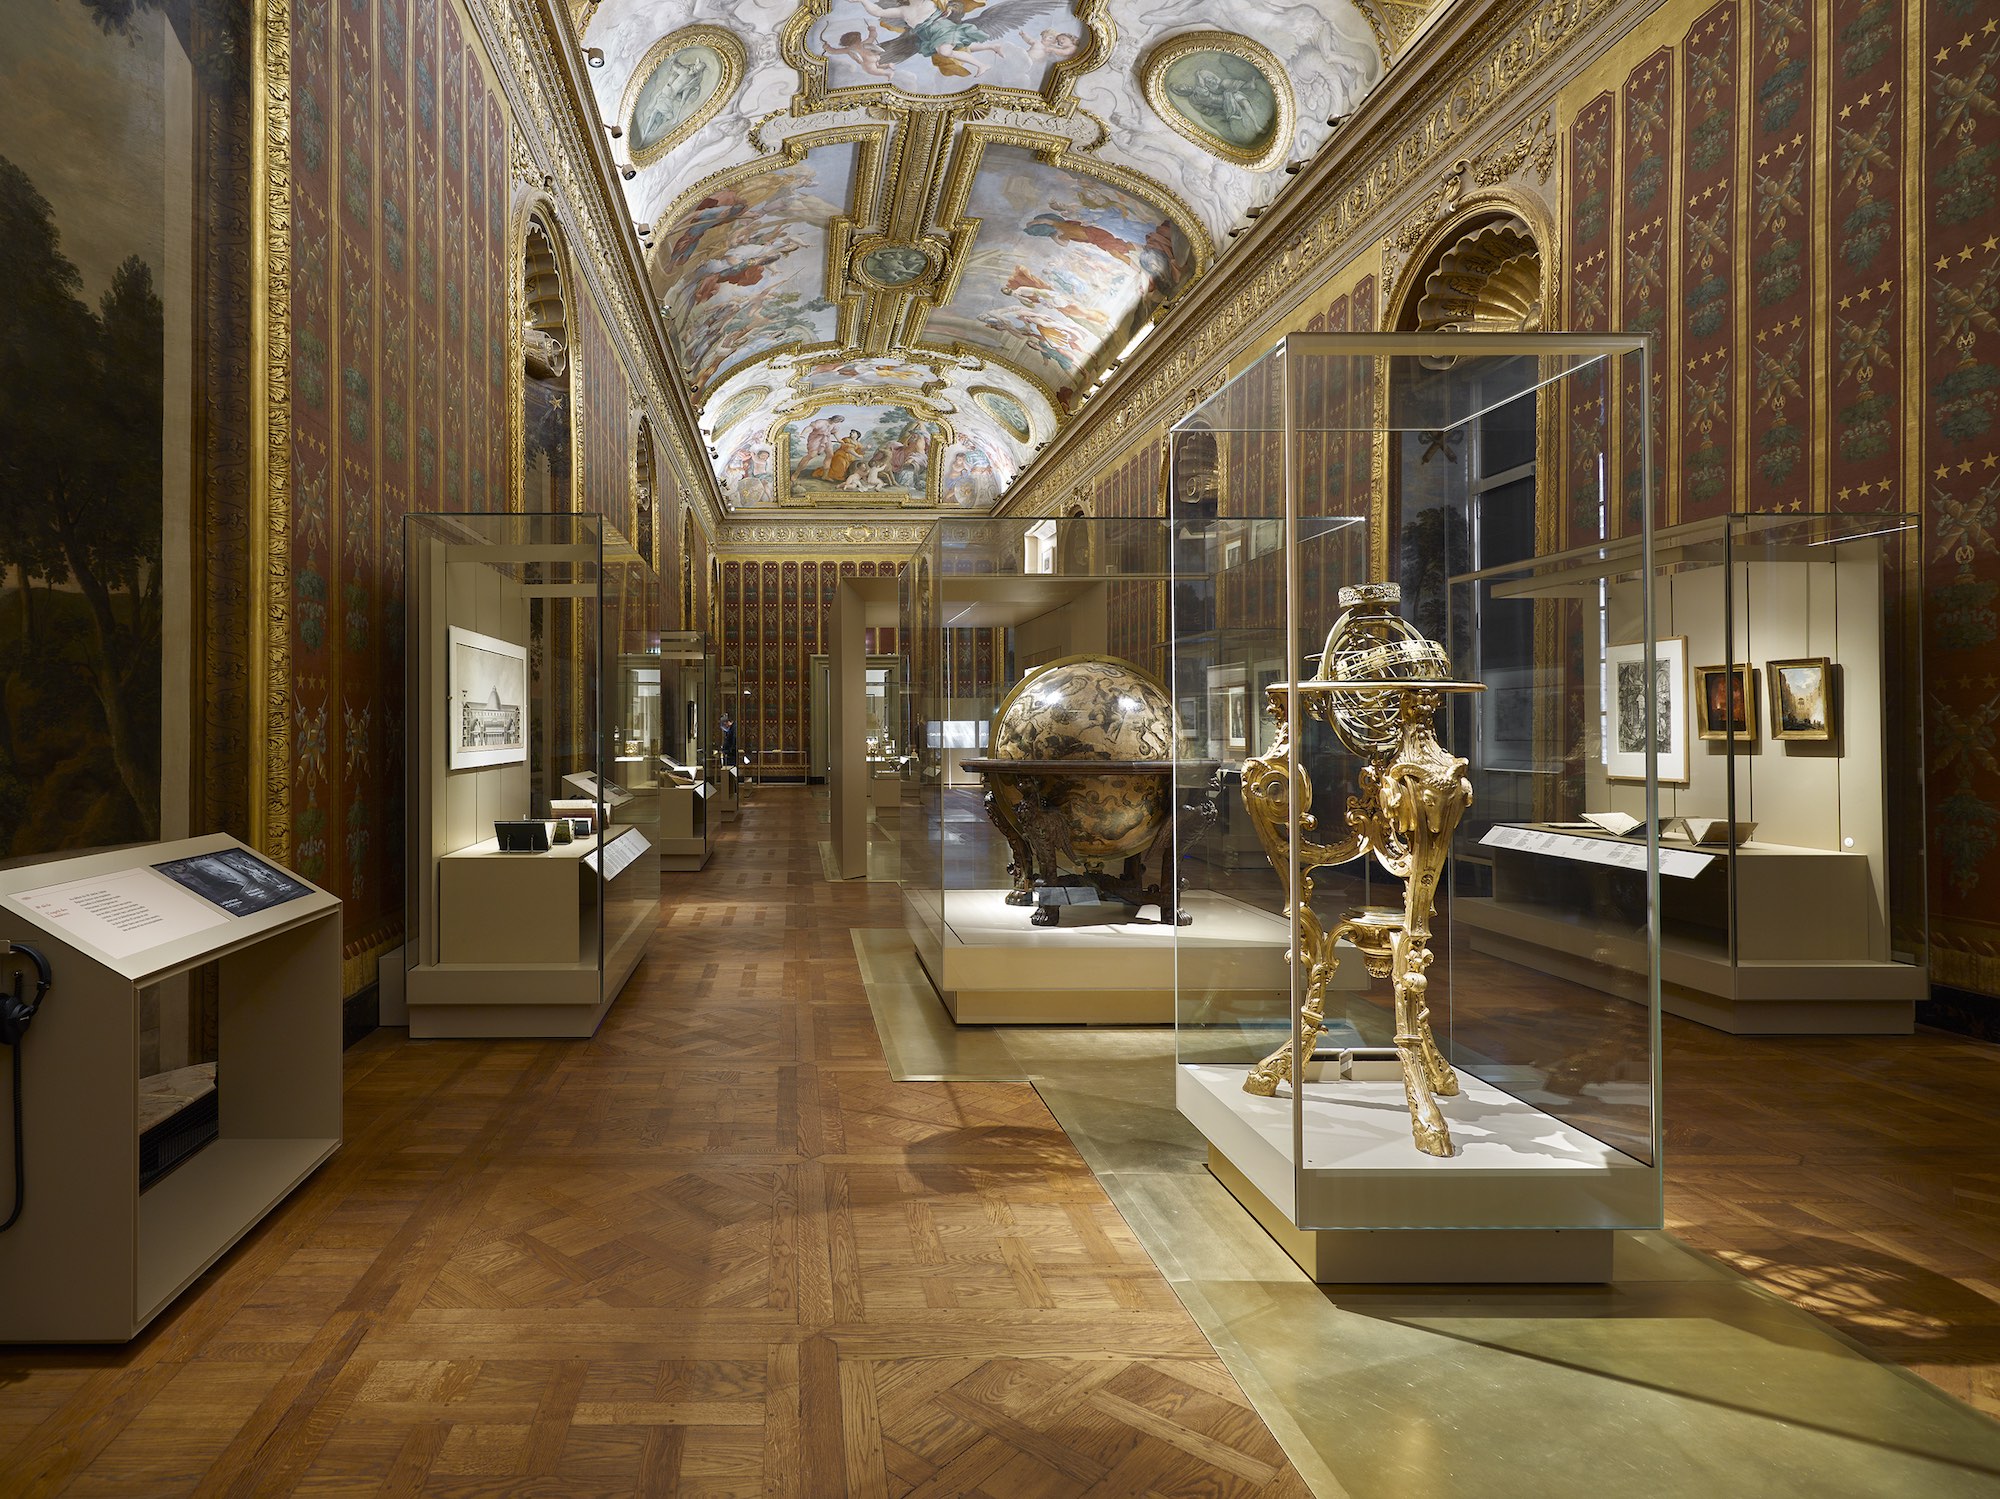 La galerie Mazarin. Photo service de presse. © Mario Ciampi, avec l’aimable autorisation de Guicciardini & Magni architetti, Firenze